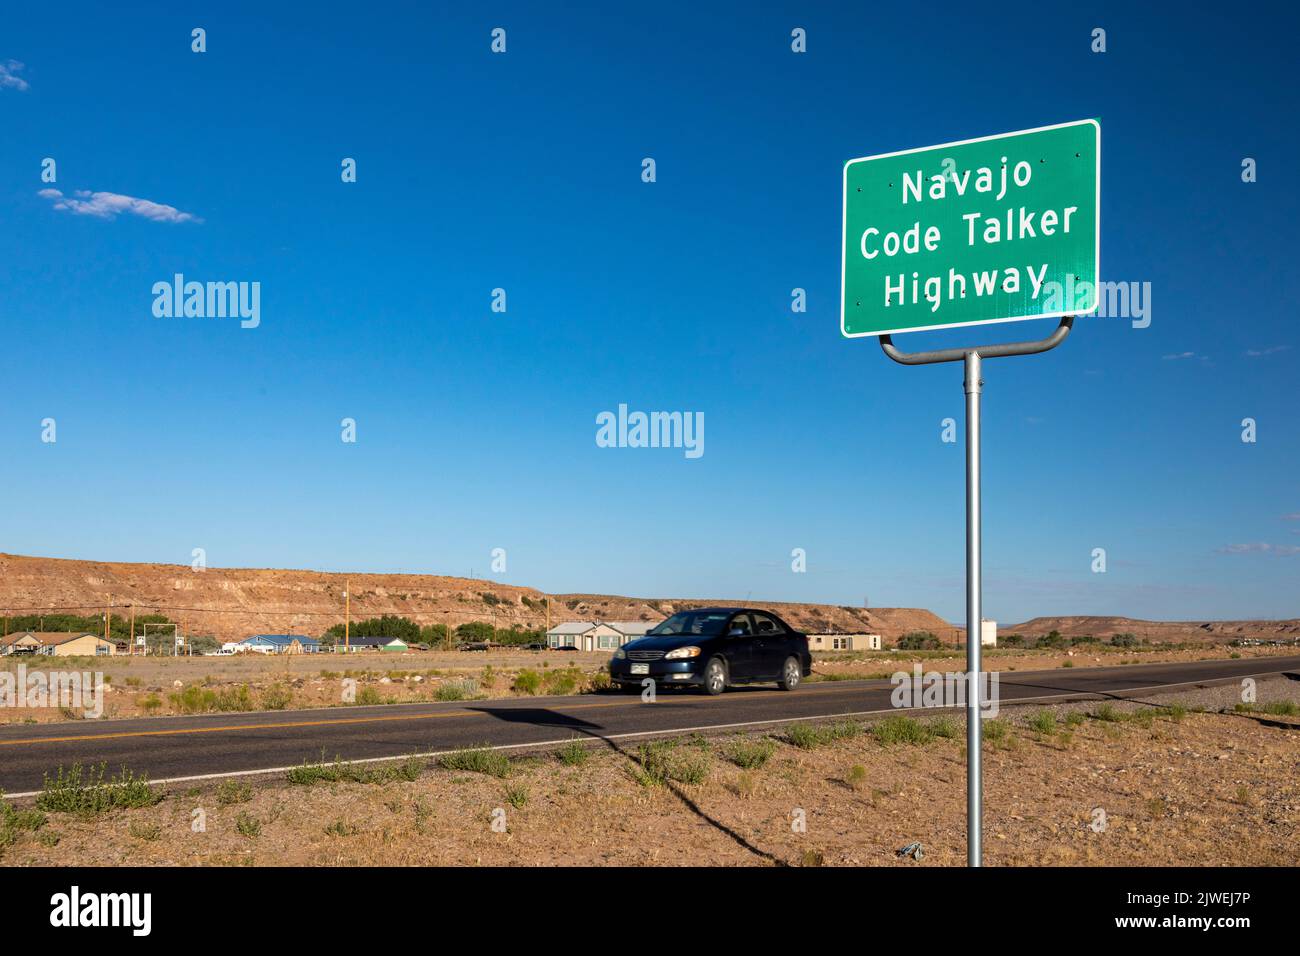 Montezuma Creek, Utah - Utah State Highway 162, der durch die Navajo Nation führt, wird als Navajo Code Talker Highway bezeichnet. Navajo-Codegesprächs s Stockfoto